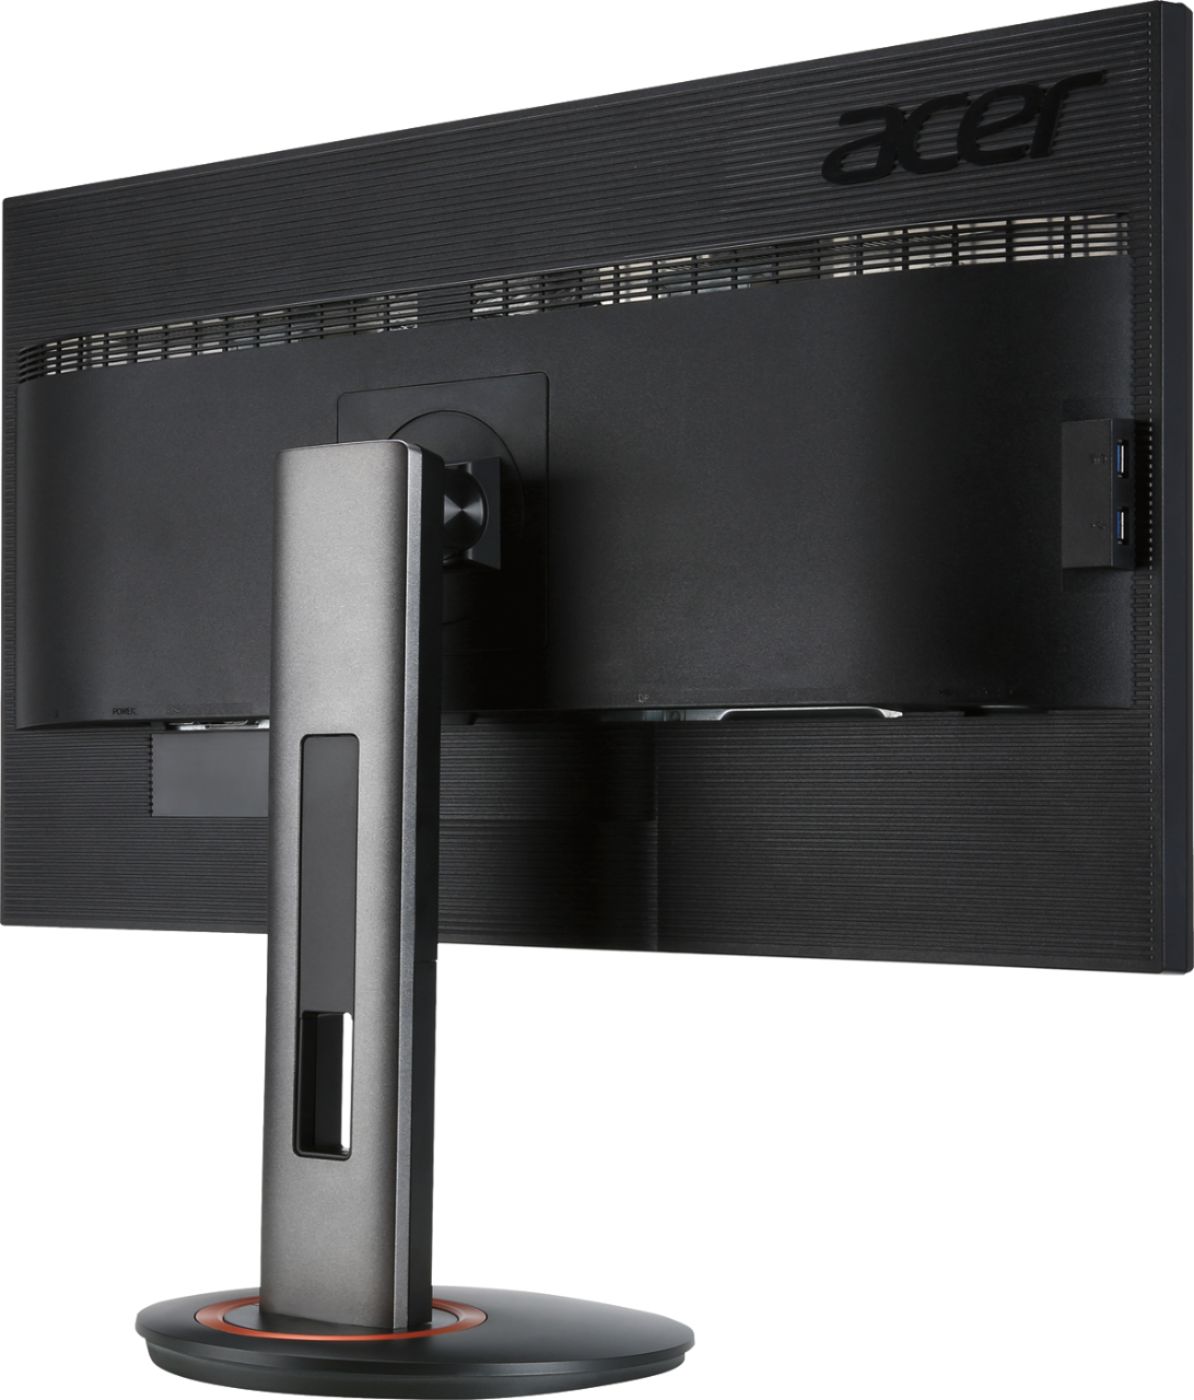 Brug af en computer voldtage smække Best Buy: Acer XF270HUA 27" IPS LED HD FreeSync Monitor Black XF270HU  ABMIIDPRZX